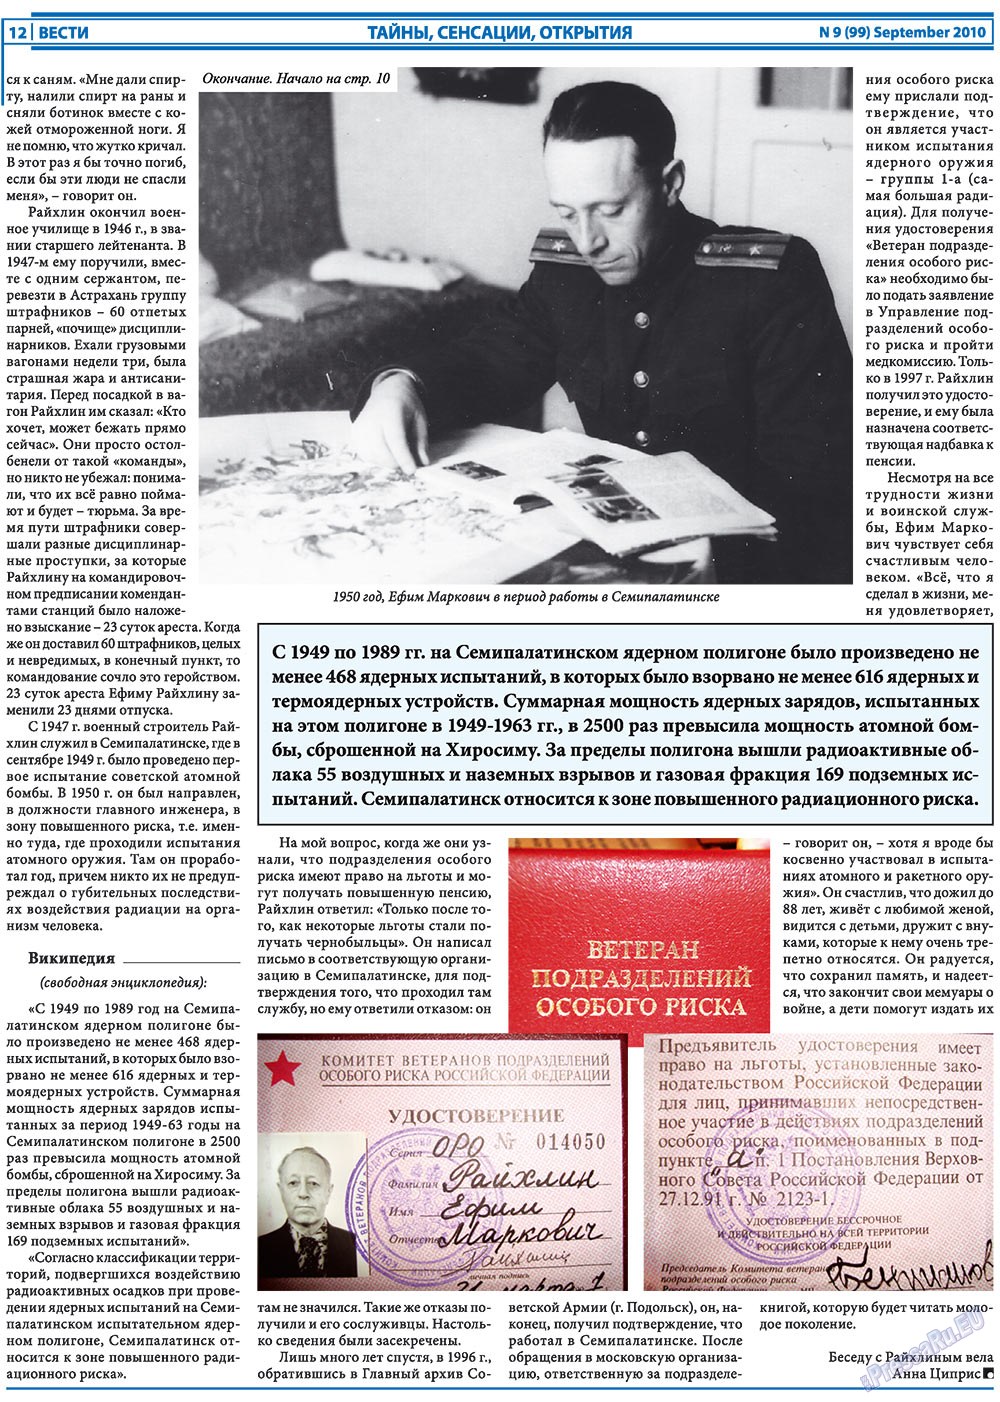 Вести, газета. 2010 №9 стр.12